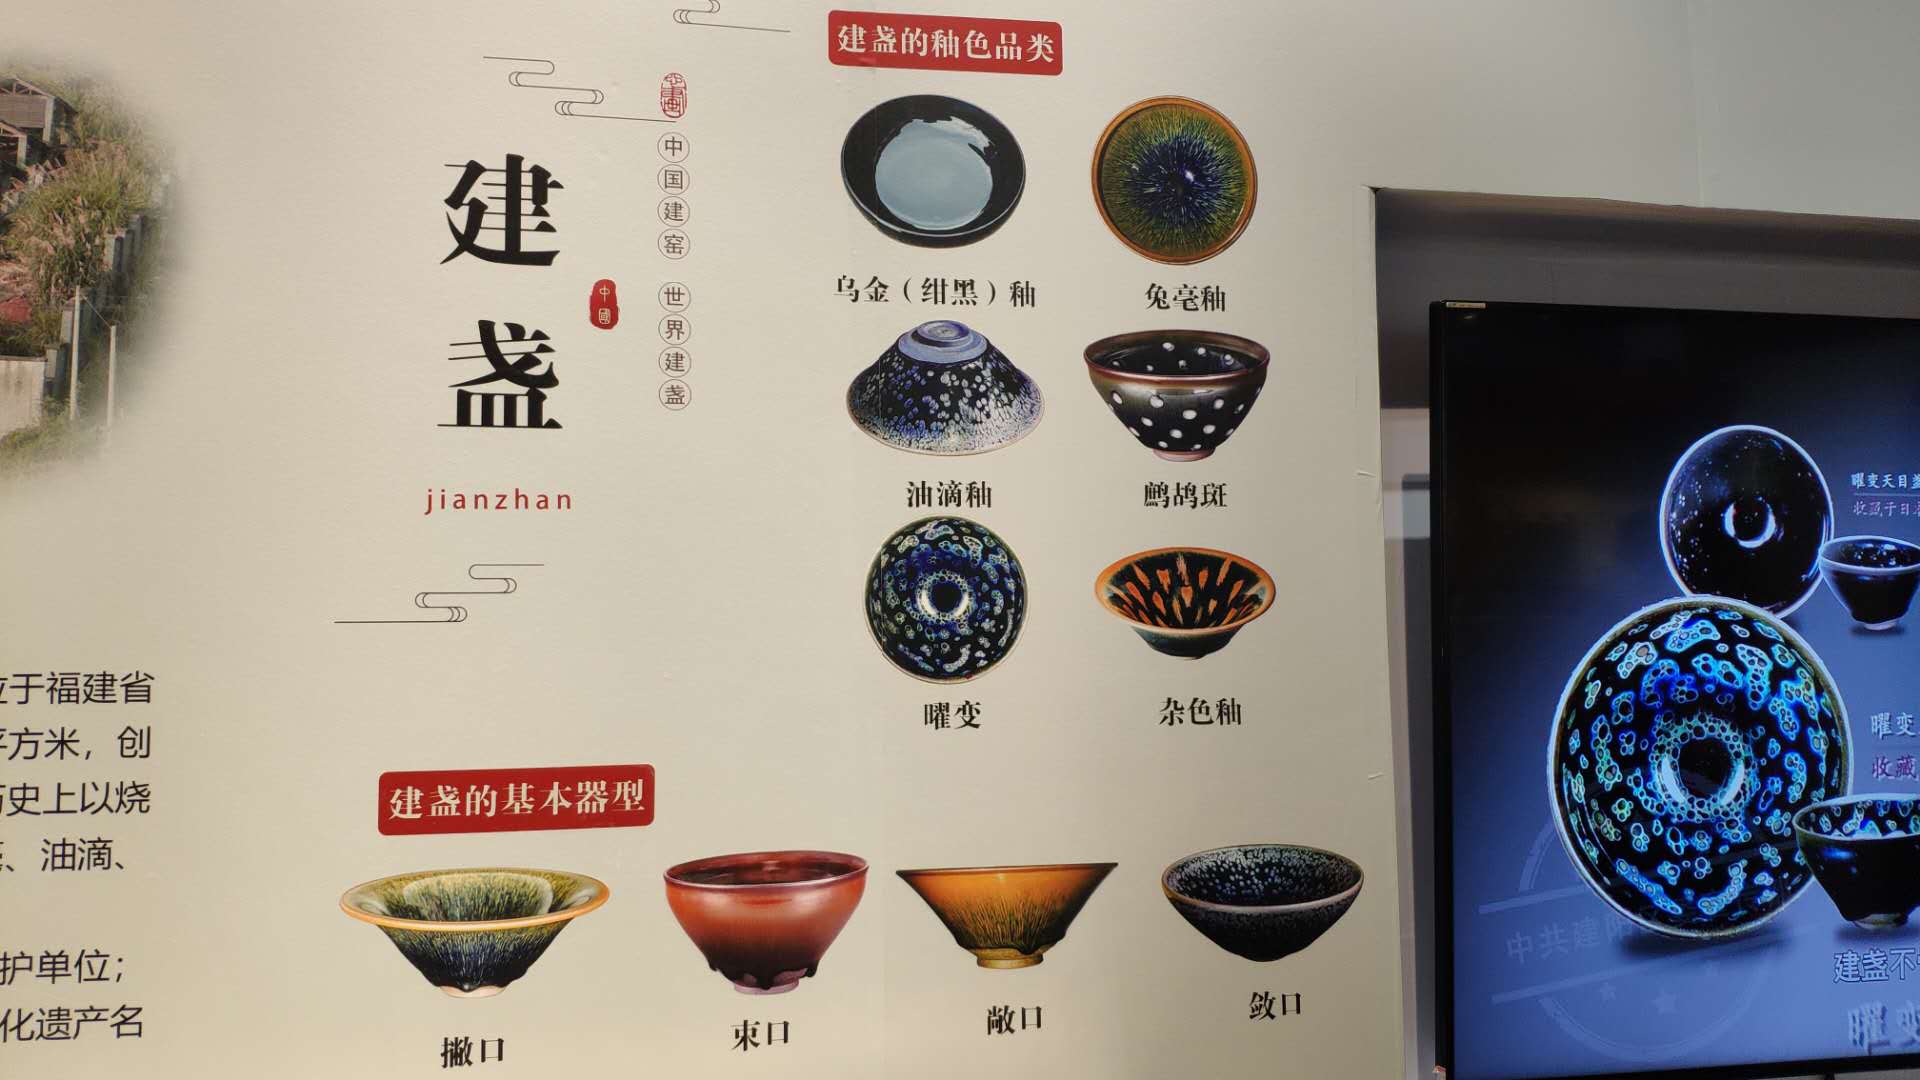 2011年,建窑建盏烧制技艺被列入第三批国家级非物质文化遗产名录